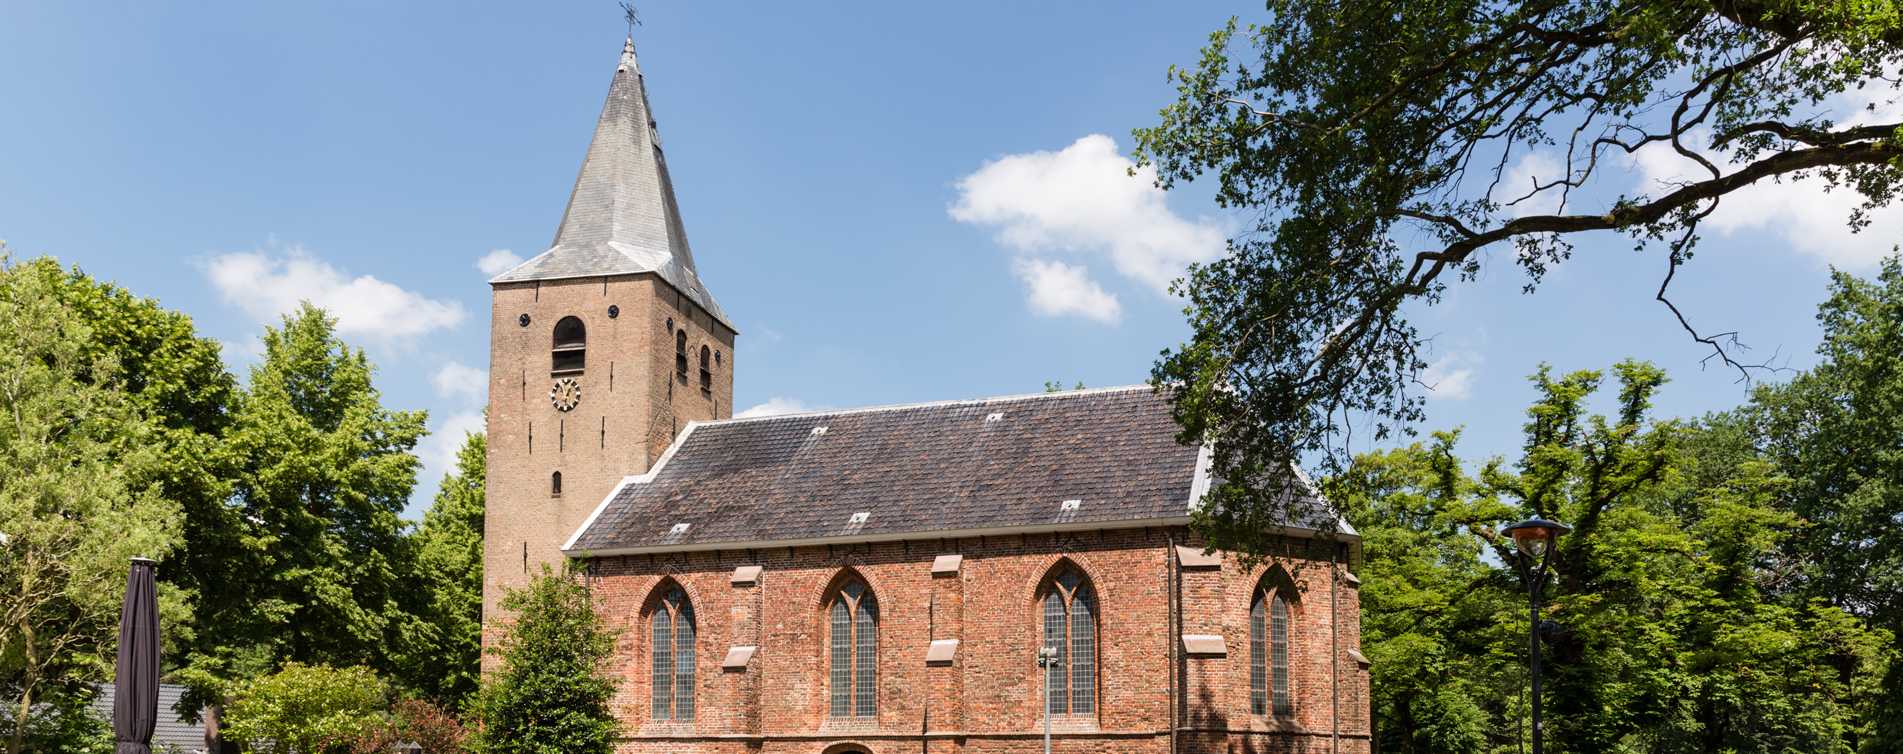 Kerk van Westerbork - omgeving van Vrieling Westerbork B.V.